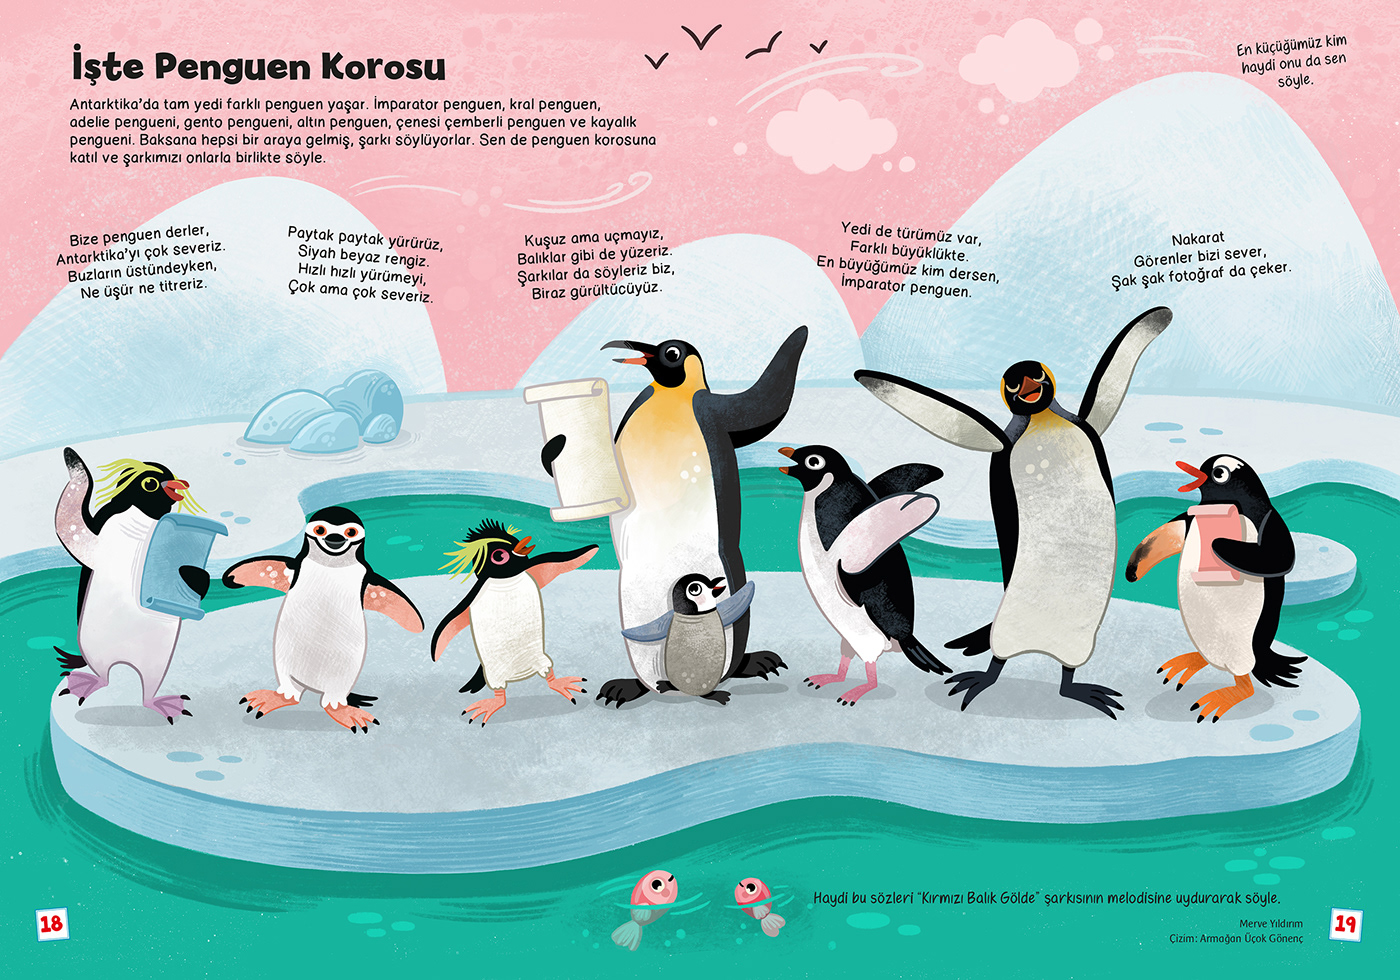 Penguin Species
